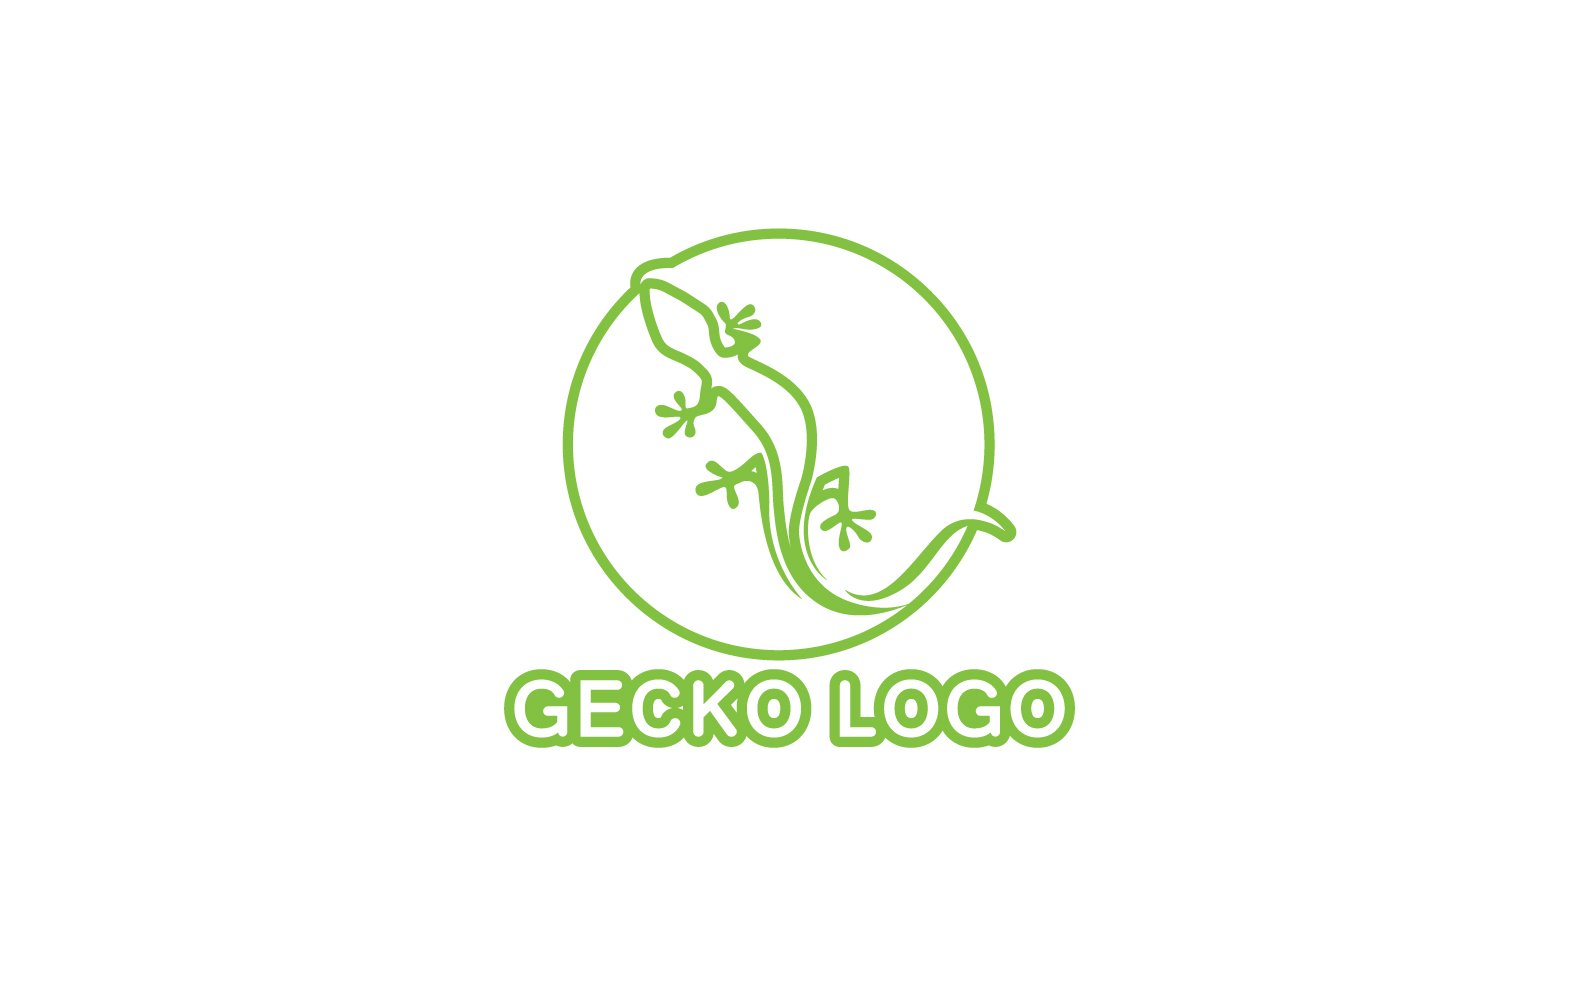 Kit Graphique #324515 Logo Gecko Divers Modles Web - Logo template Preview